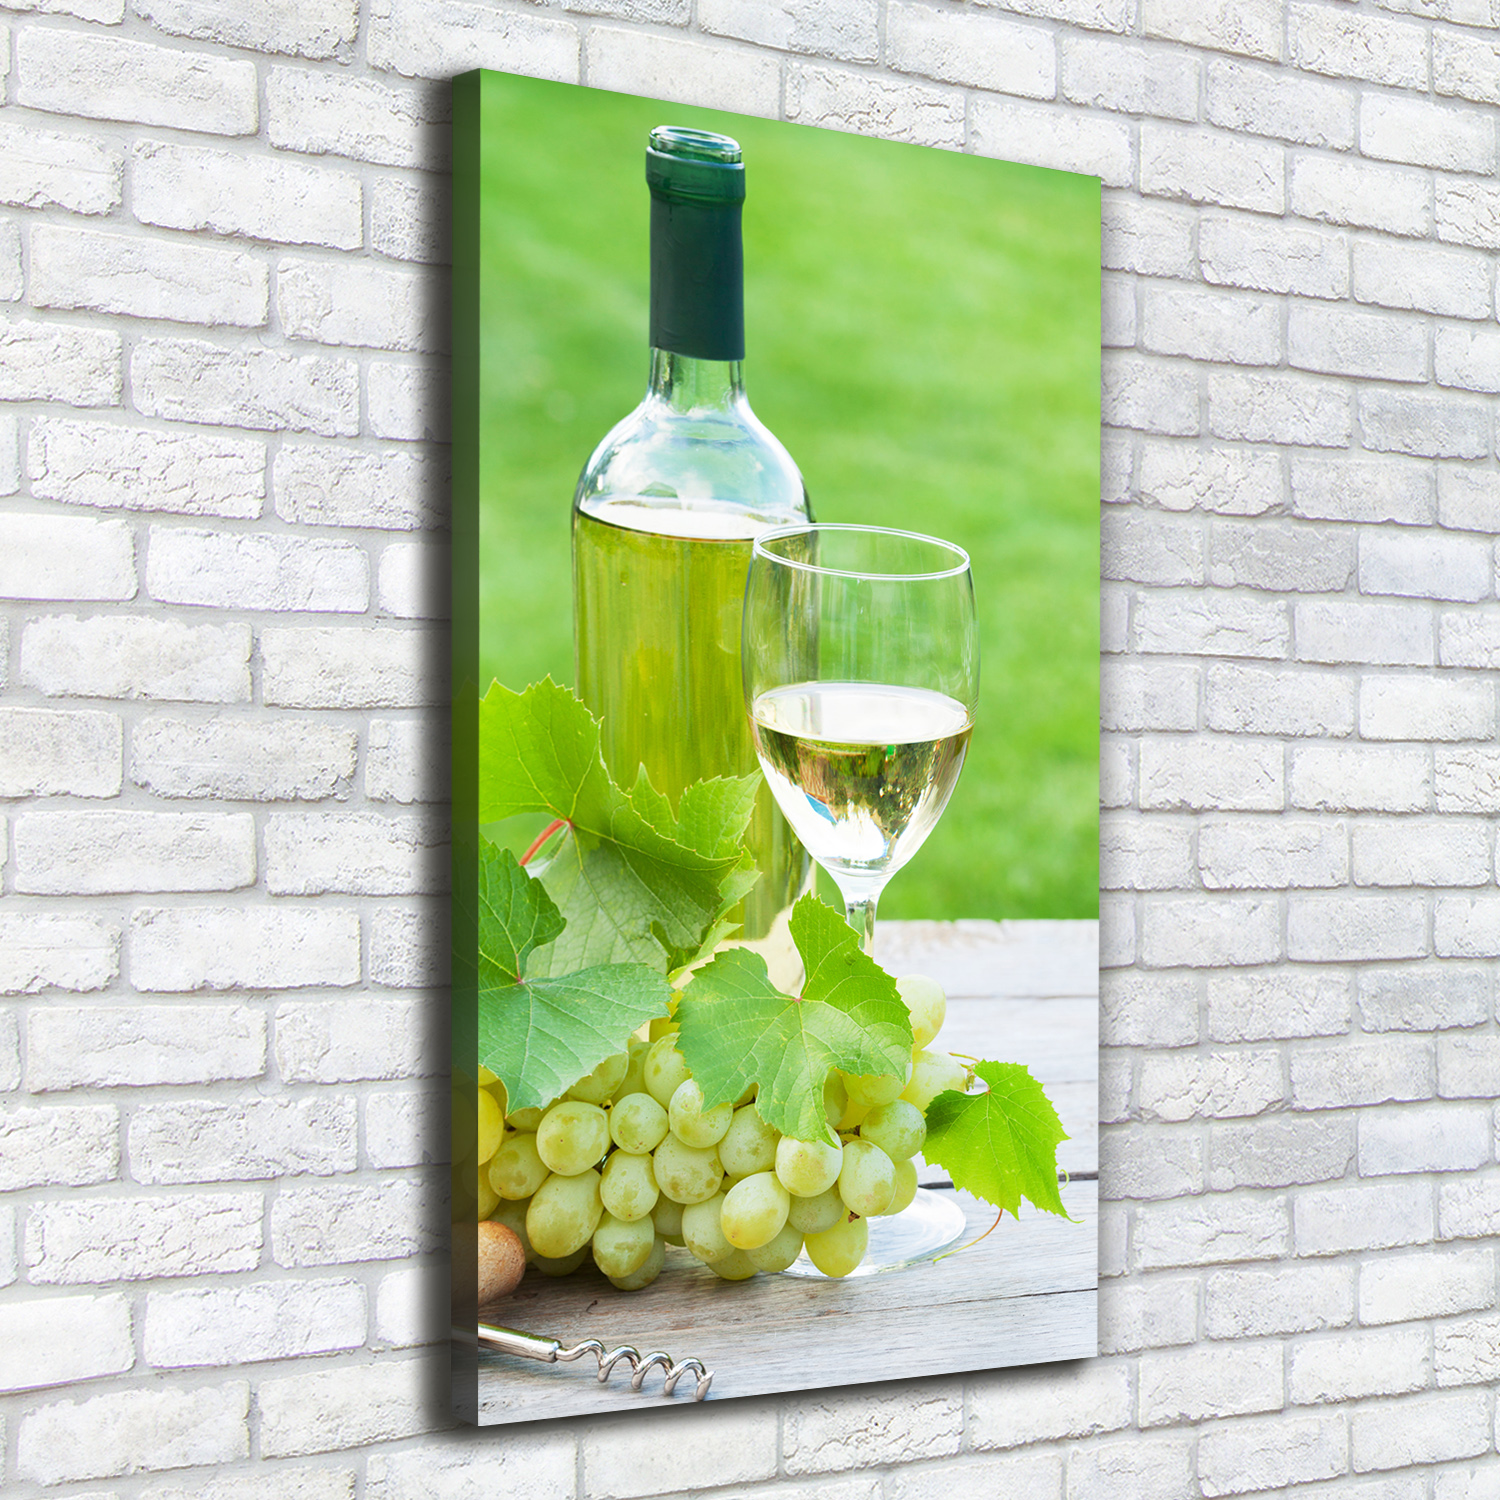 Leinwand-Bild Kunstdruck Hochformat 50x100 Bilder Trauben und Wein